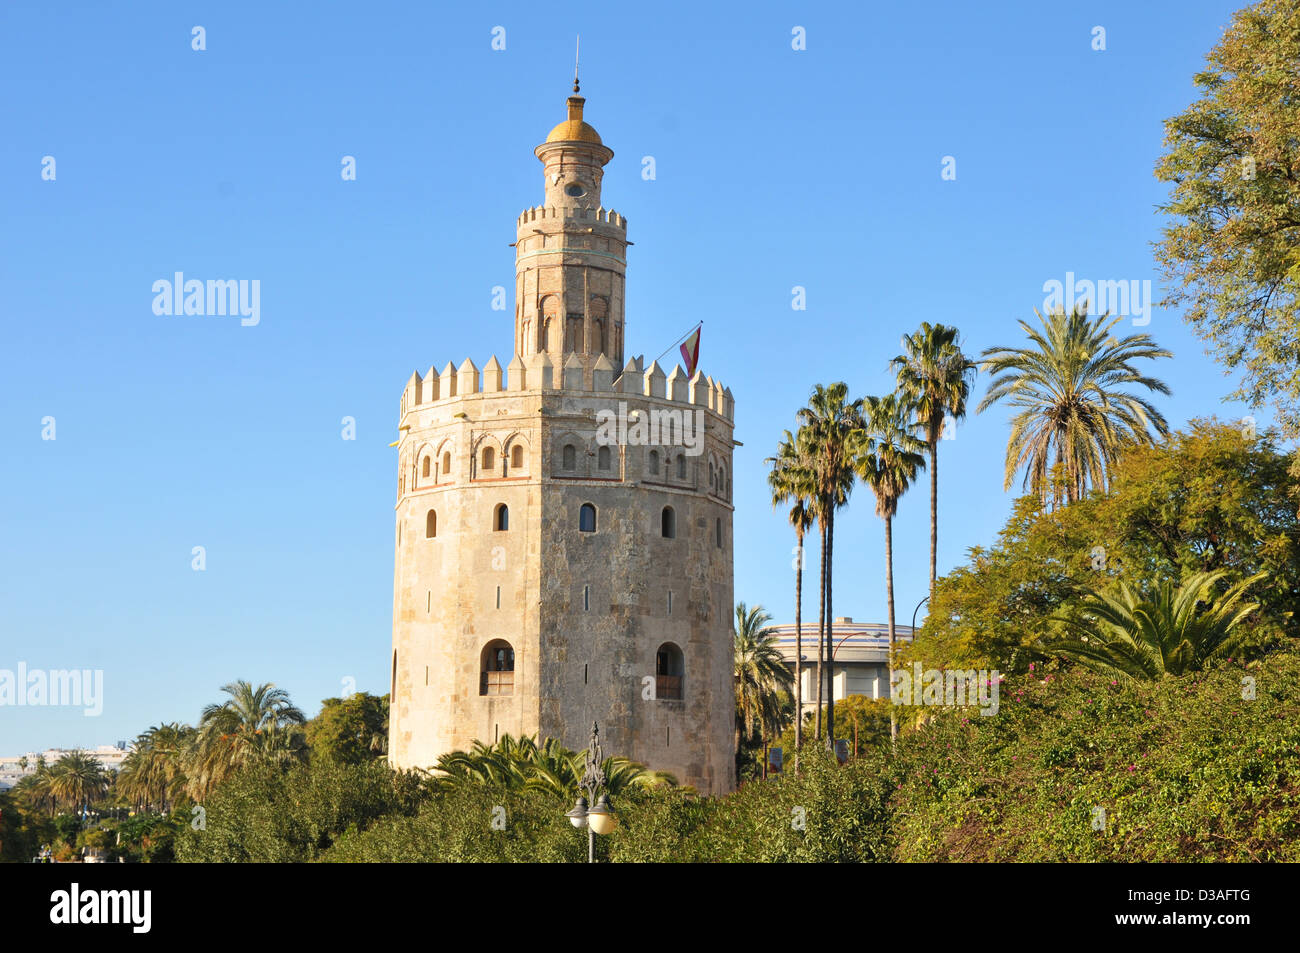 Torre del Oro, Seville Stock Photo - Alamy